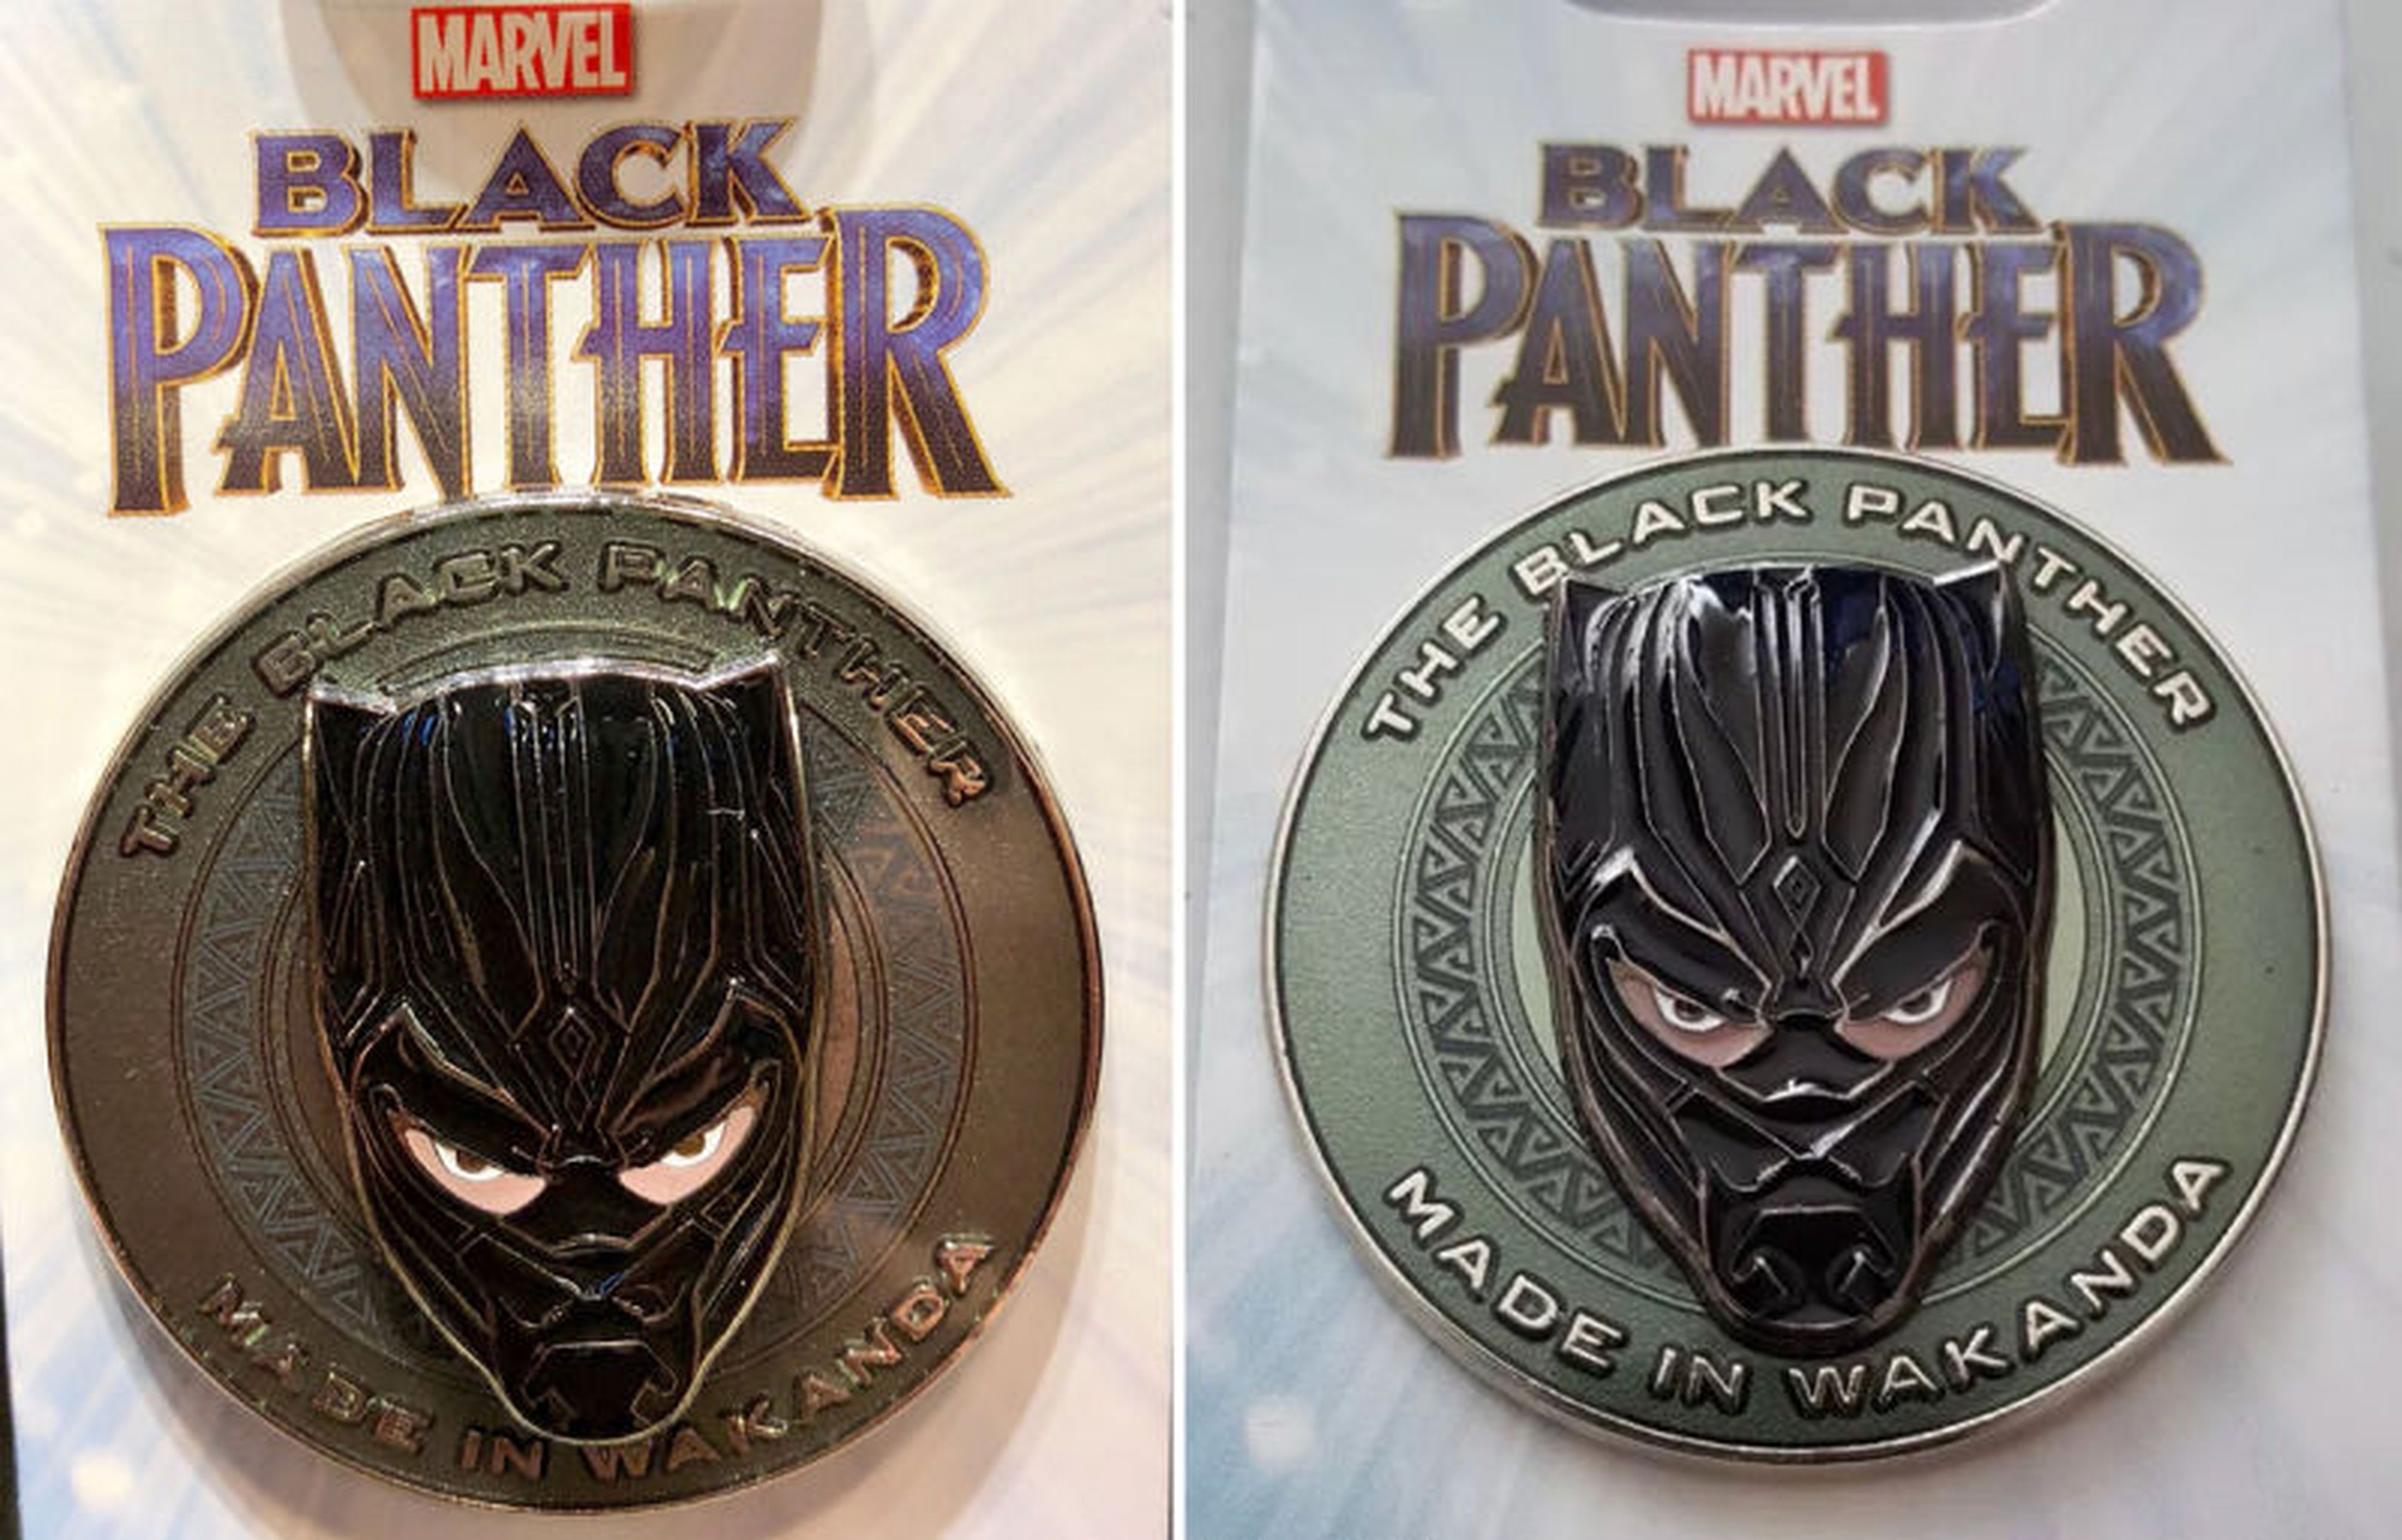 Black Panther pin